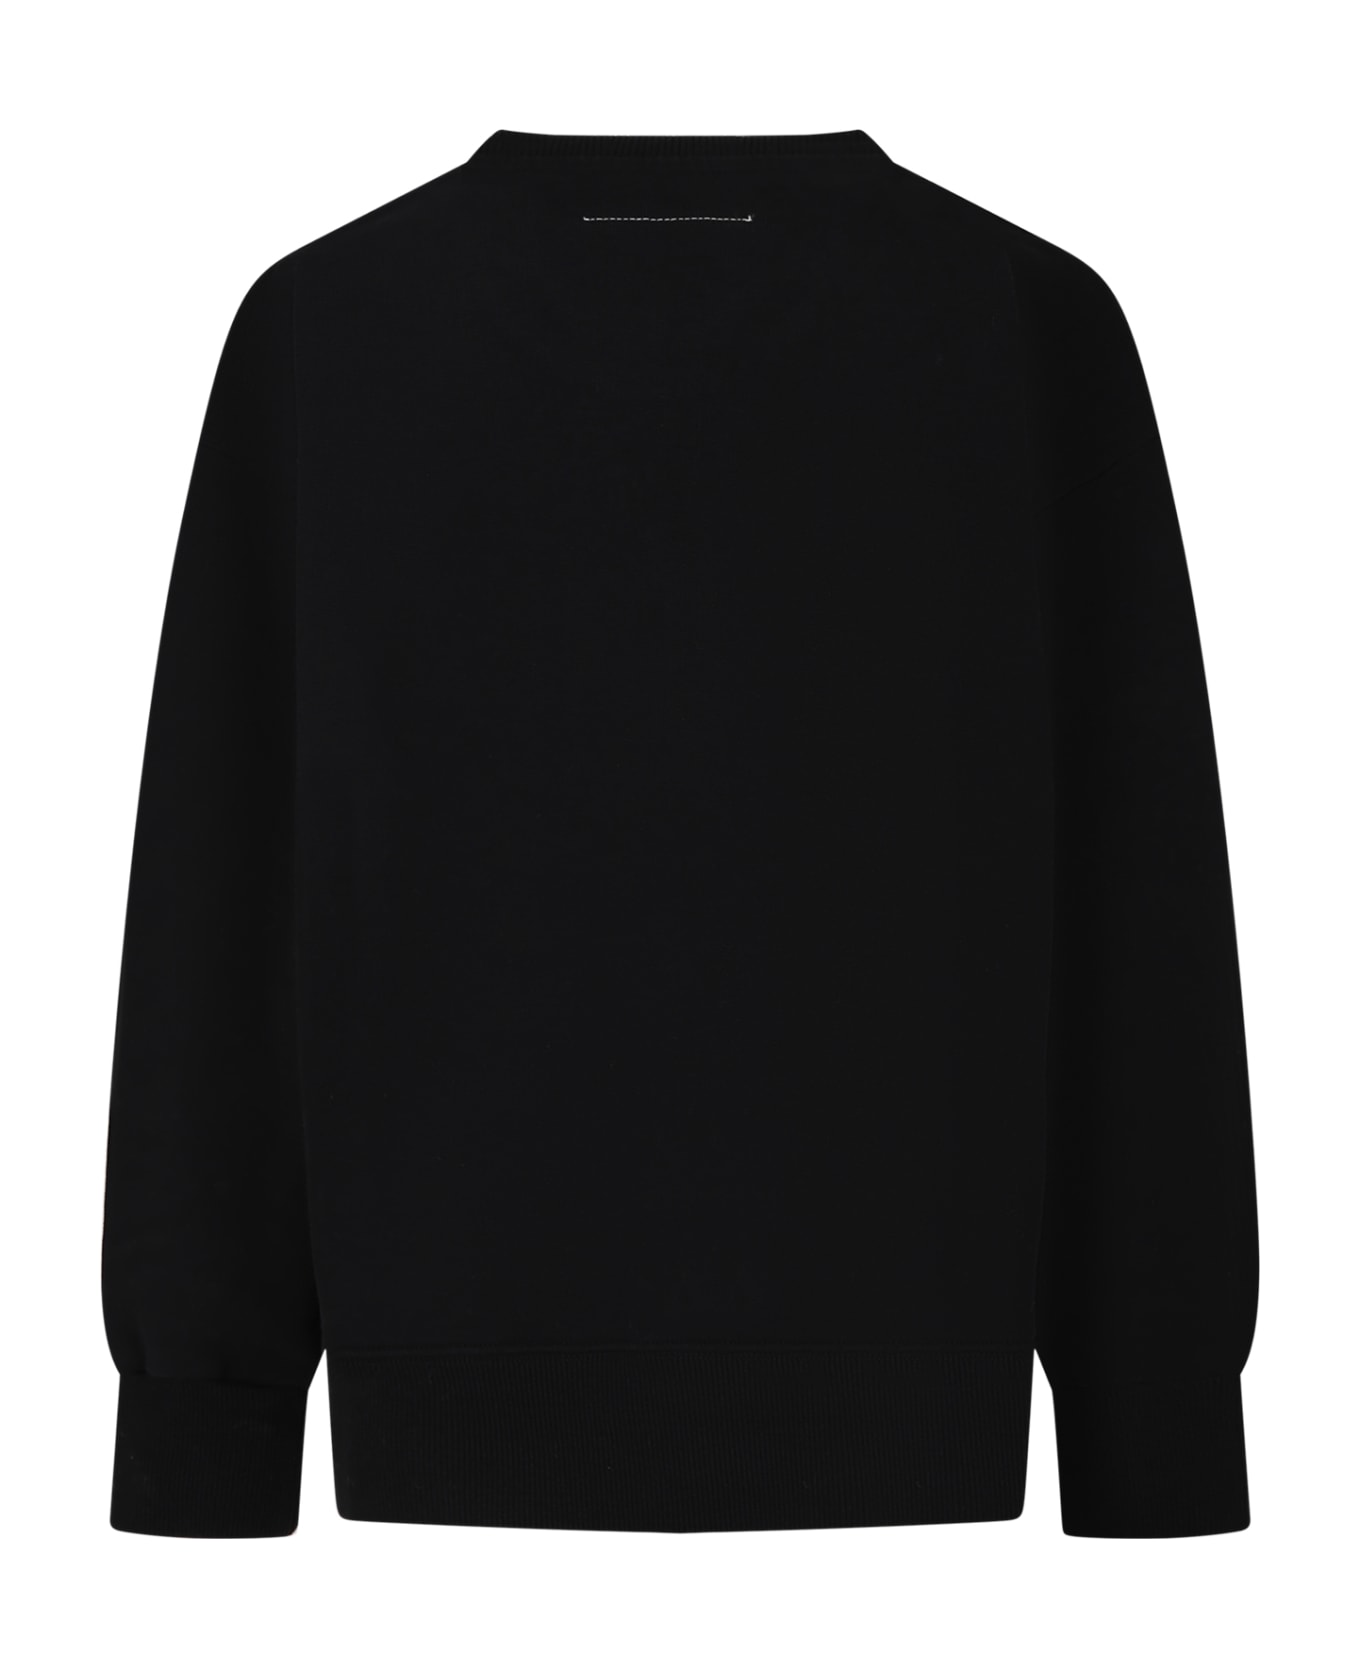 MM6 Maison Margiela Black Sweatshirt For Kids - M6900 ニットウェア＆スウェットシャツ